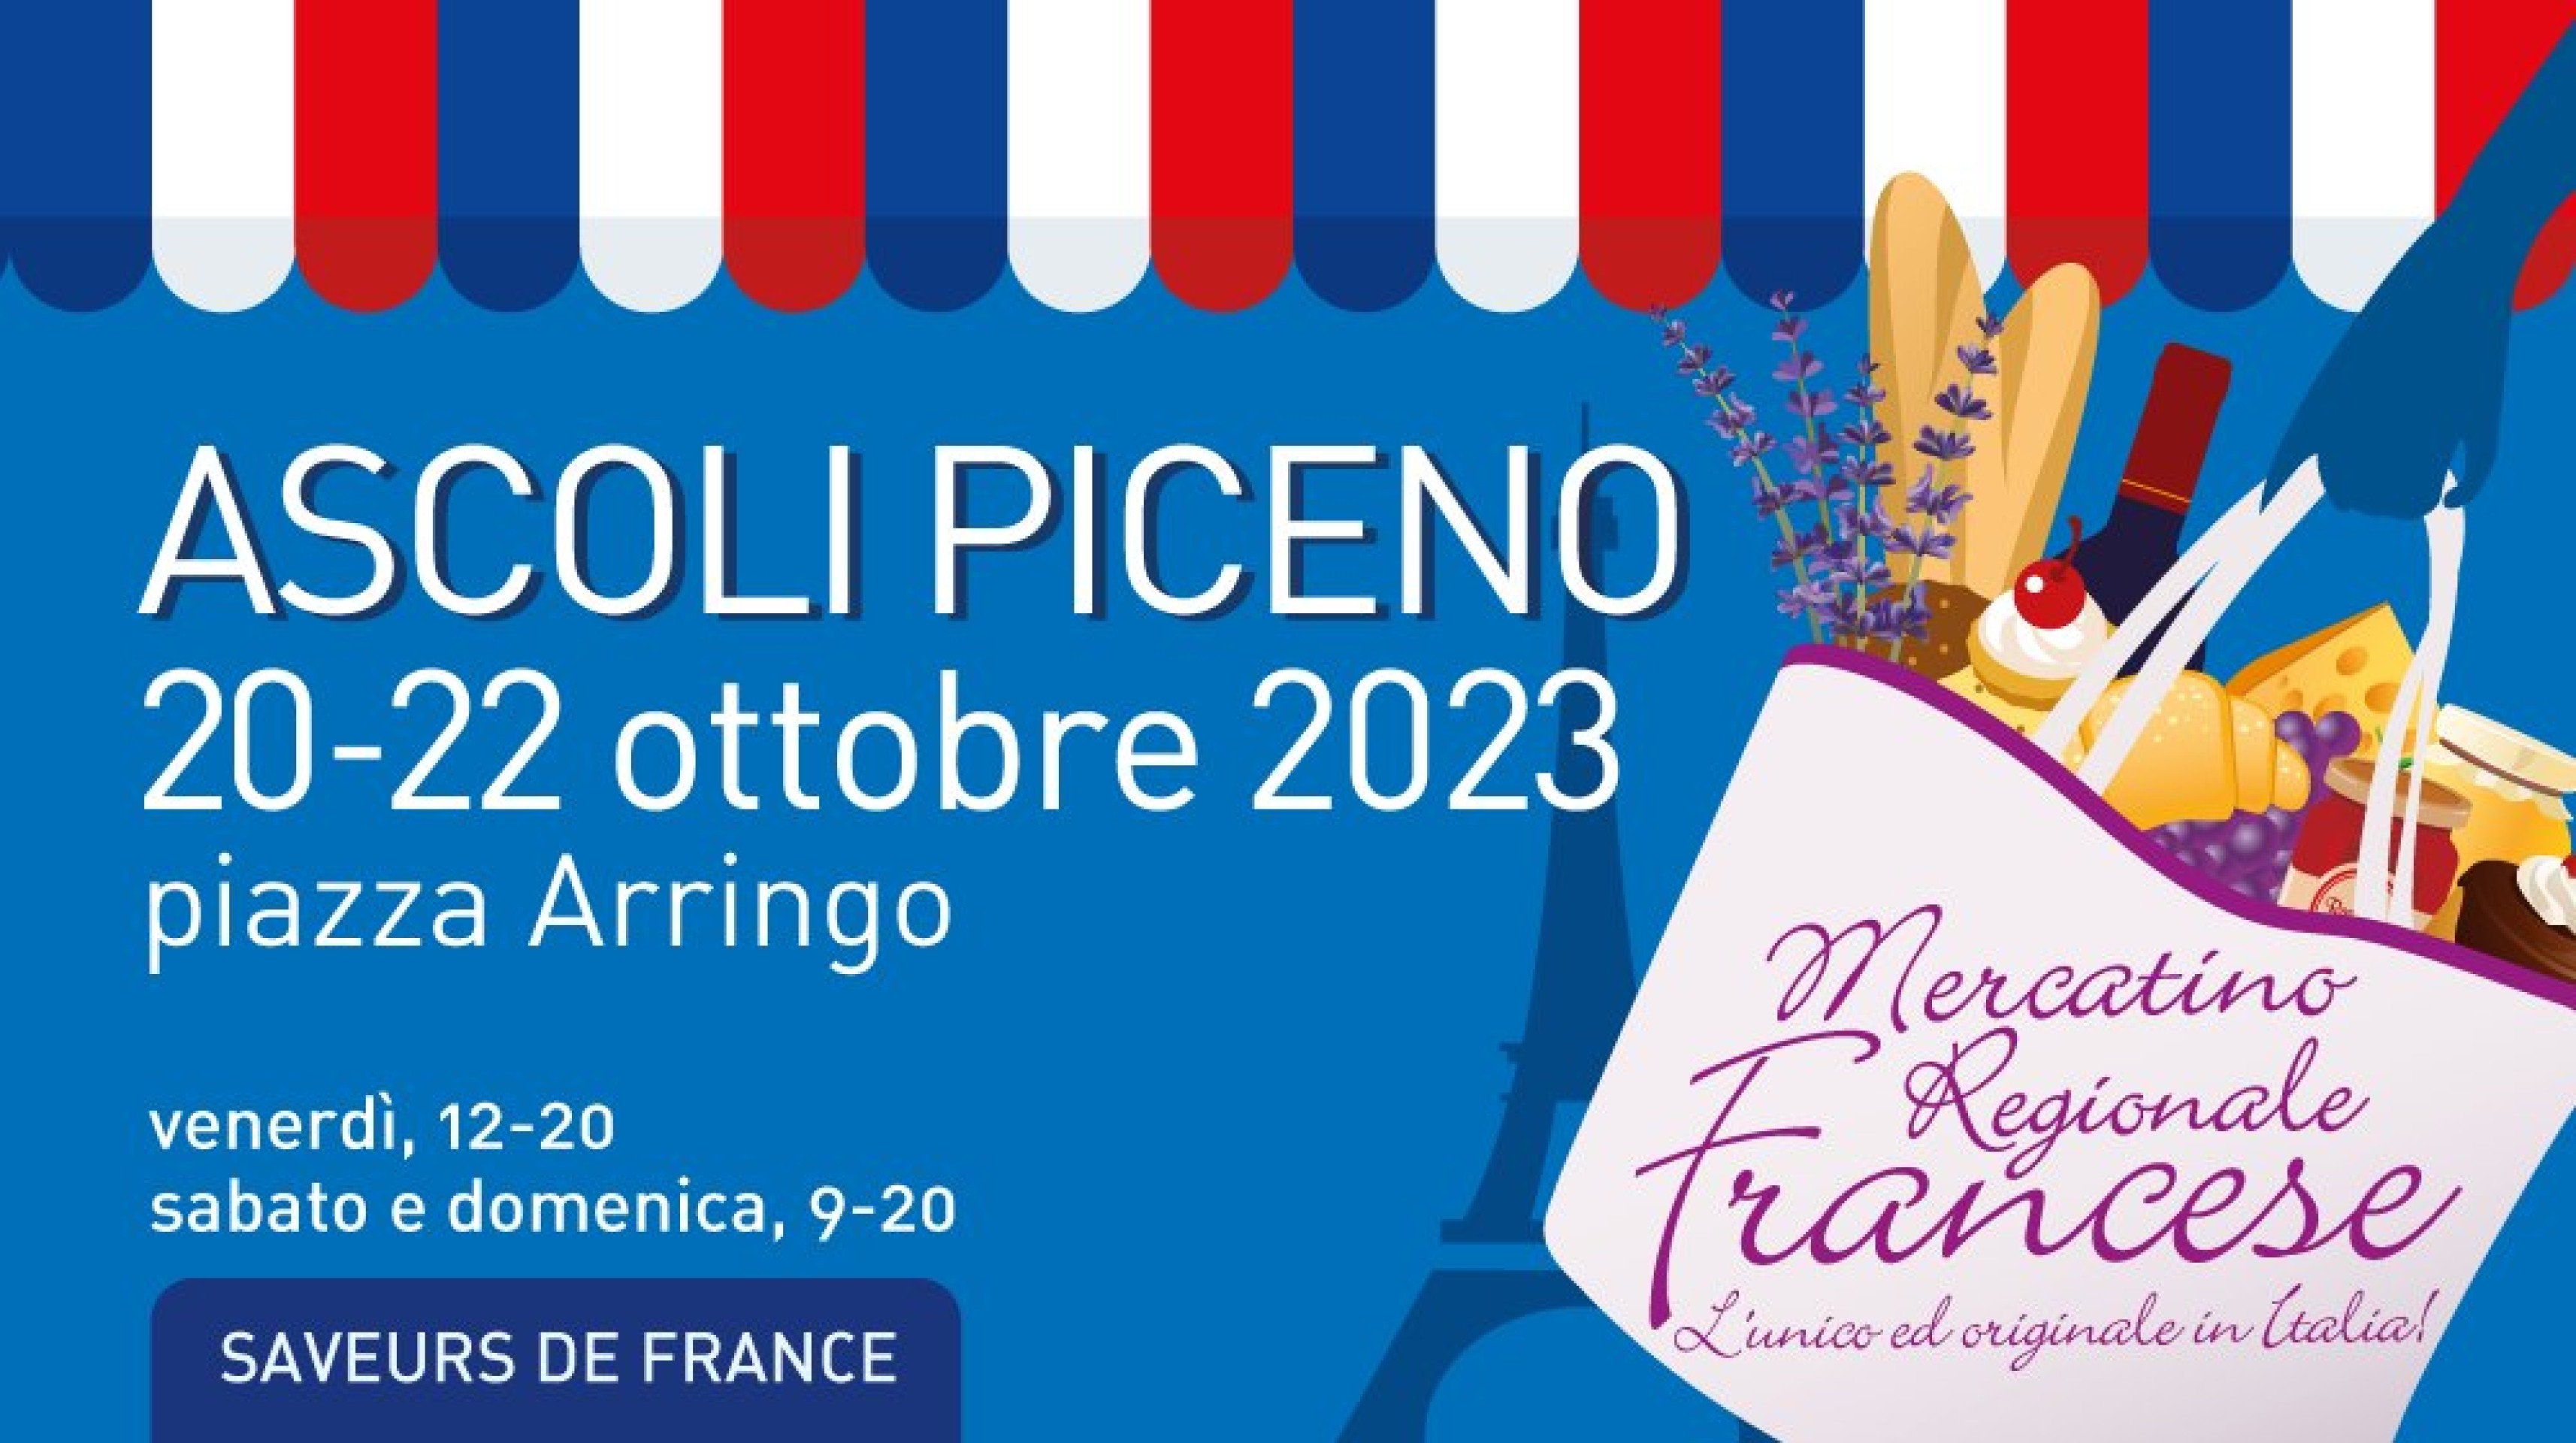 MERCATINO REGIONALE FRANCESE a ASCOLI PICENO 2023